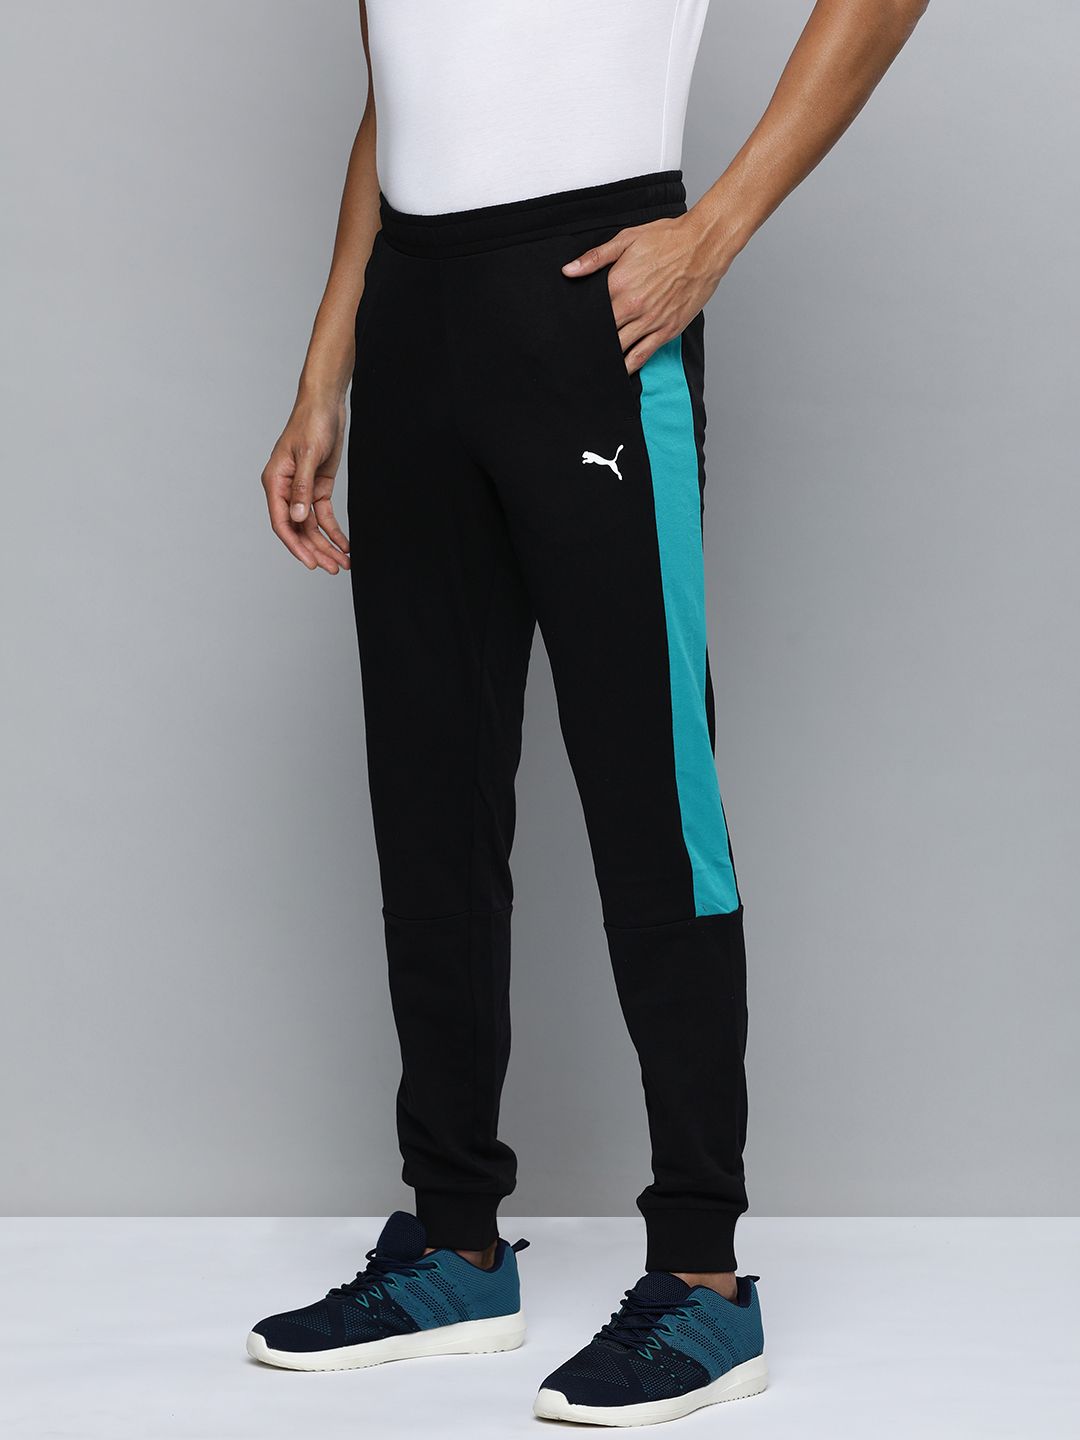 Puma Sweat Pants  Buy Puma One8 Virat Kohli Piping Men Green Sweatpant  Online  Nykaa Fashion